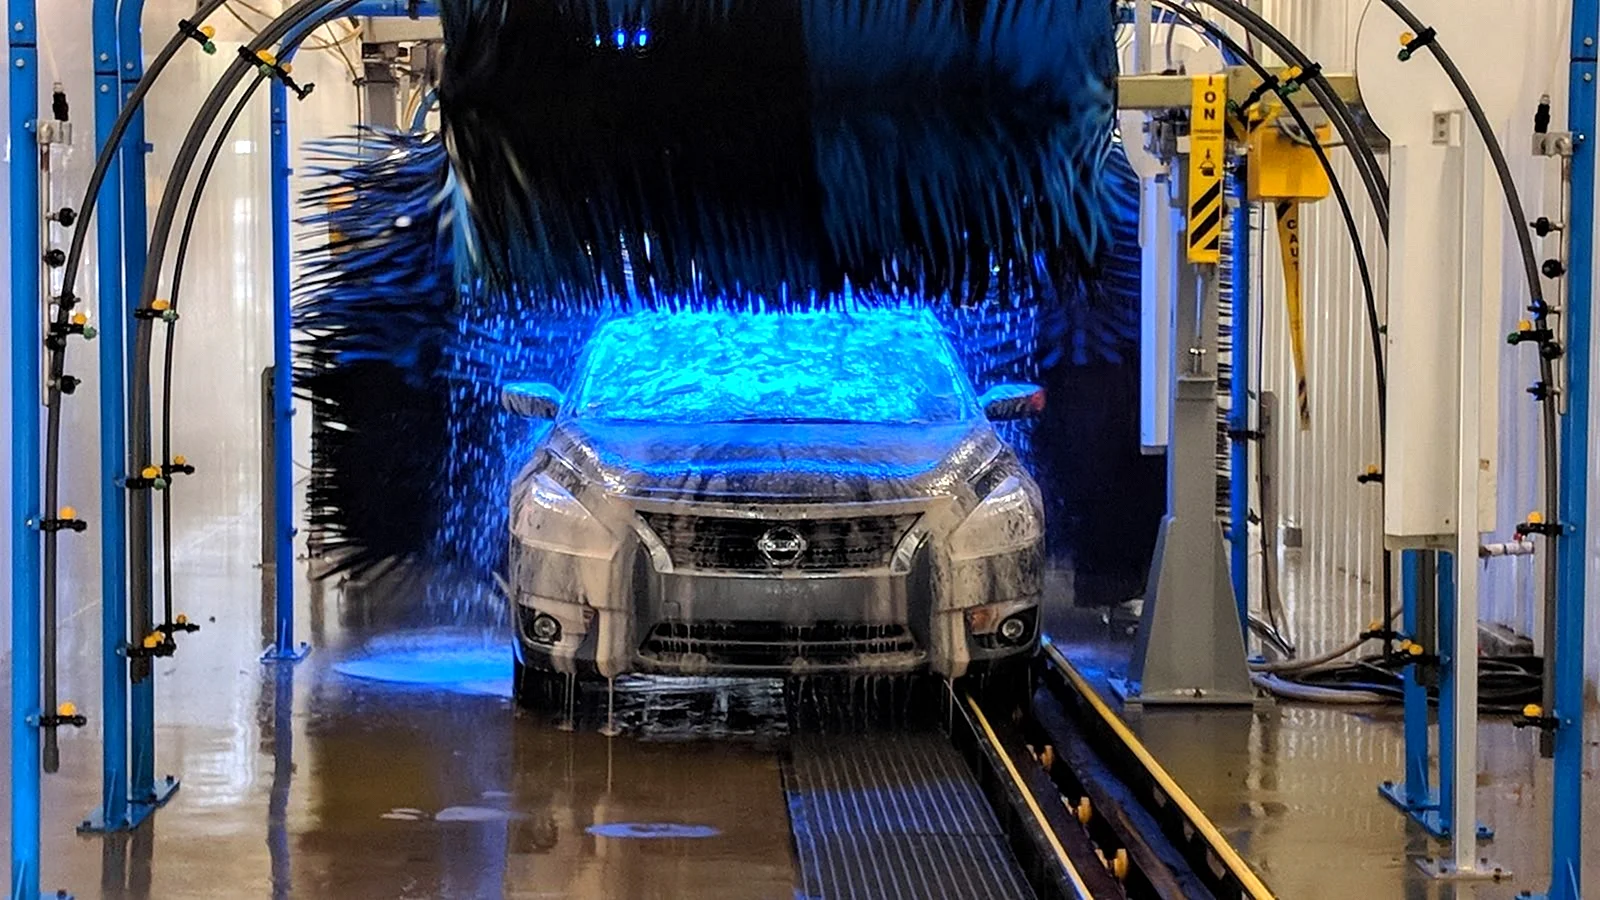 Автомоечный комплекс “Wash car”